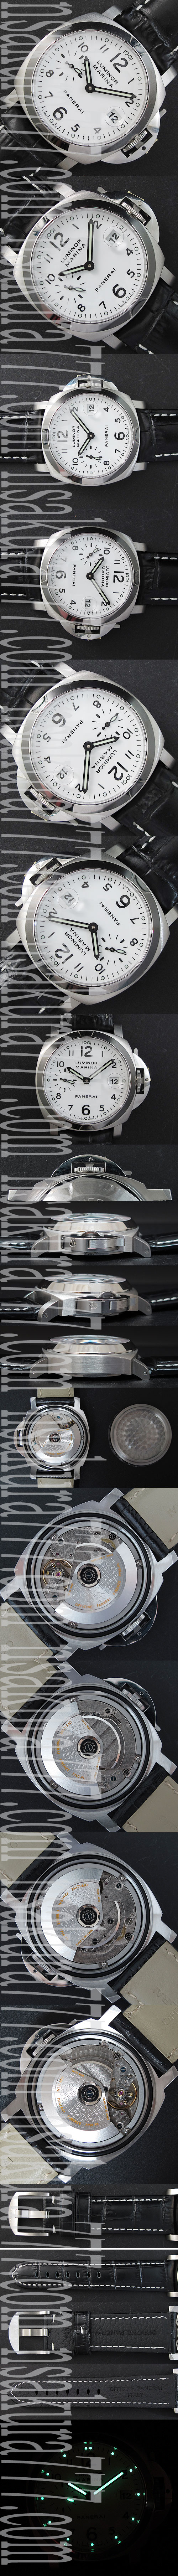 【優れた品質】パネライ ルミノール マリーナ PAM049新規モデル時計